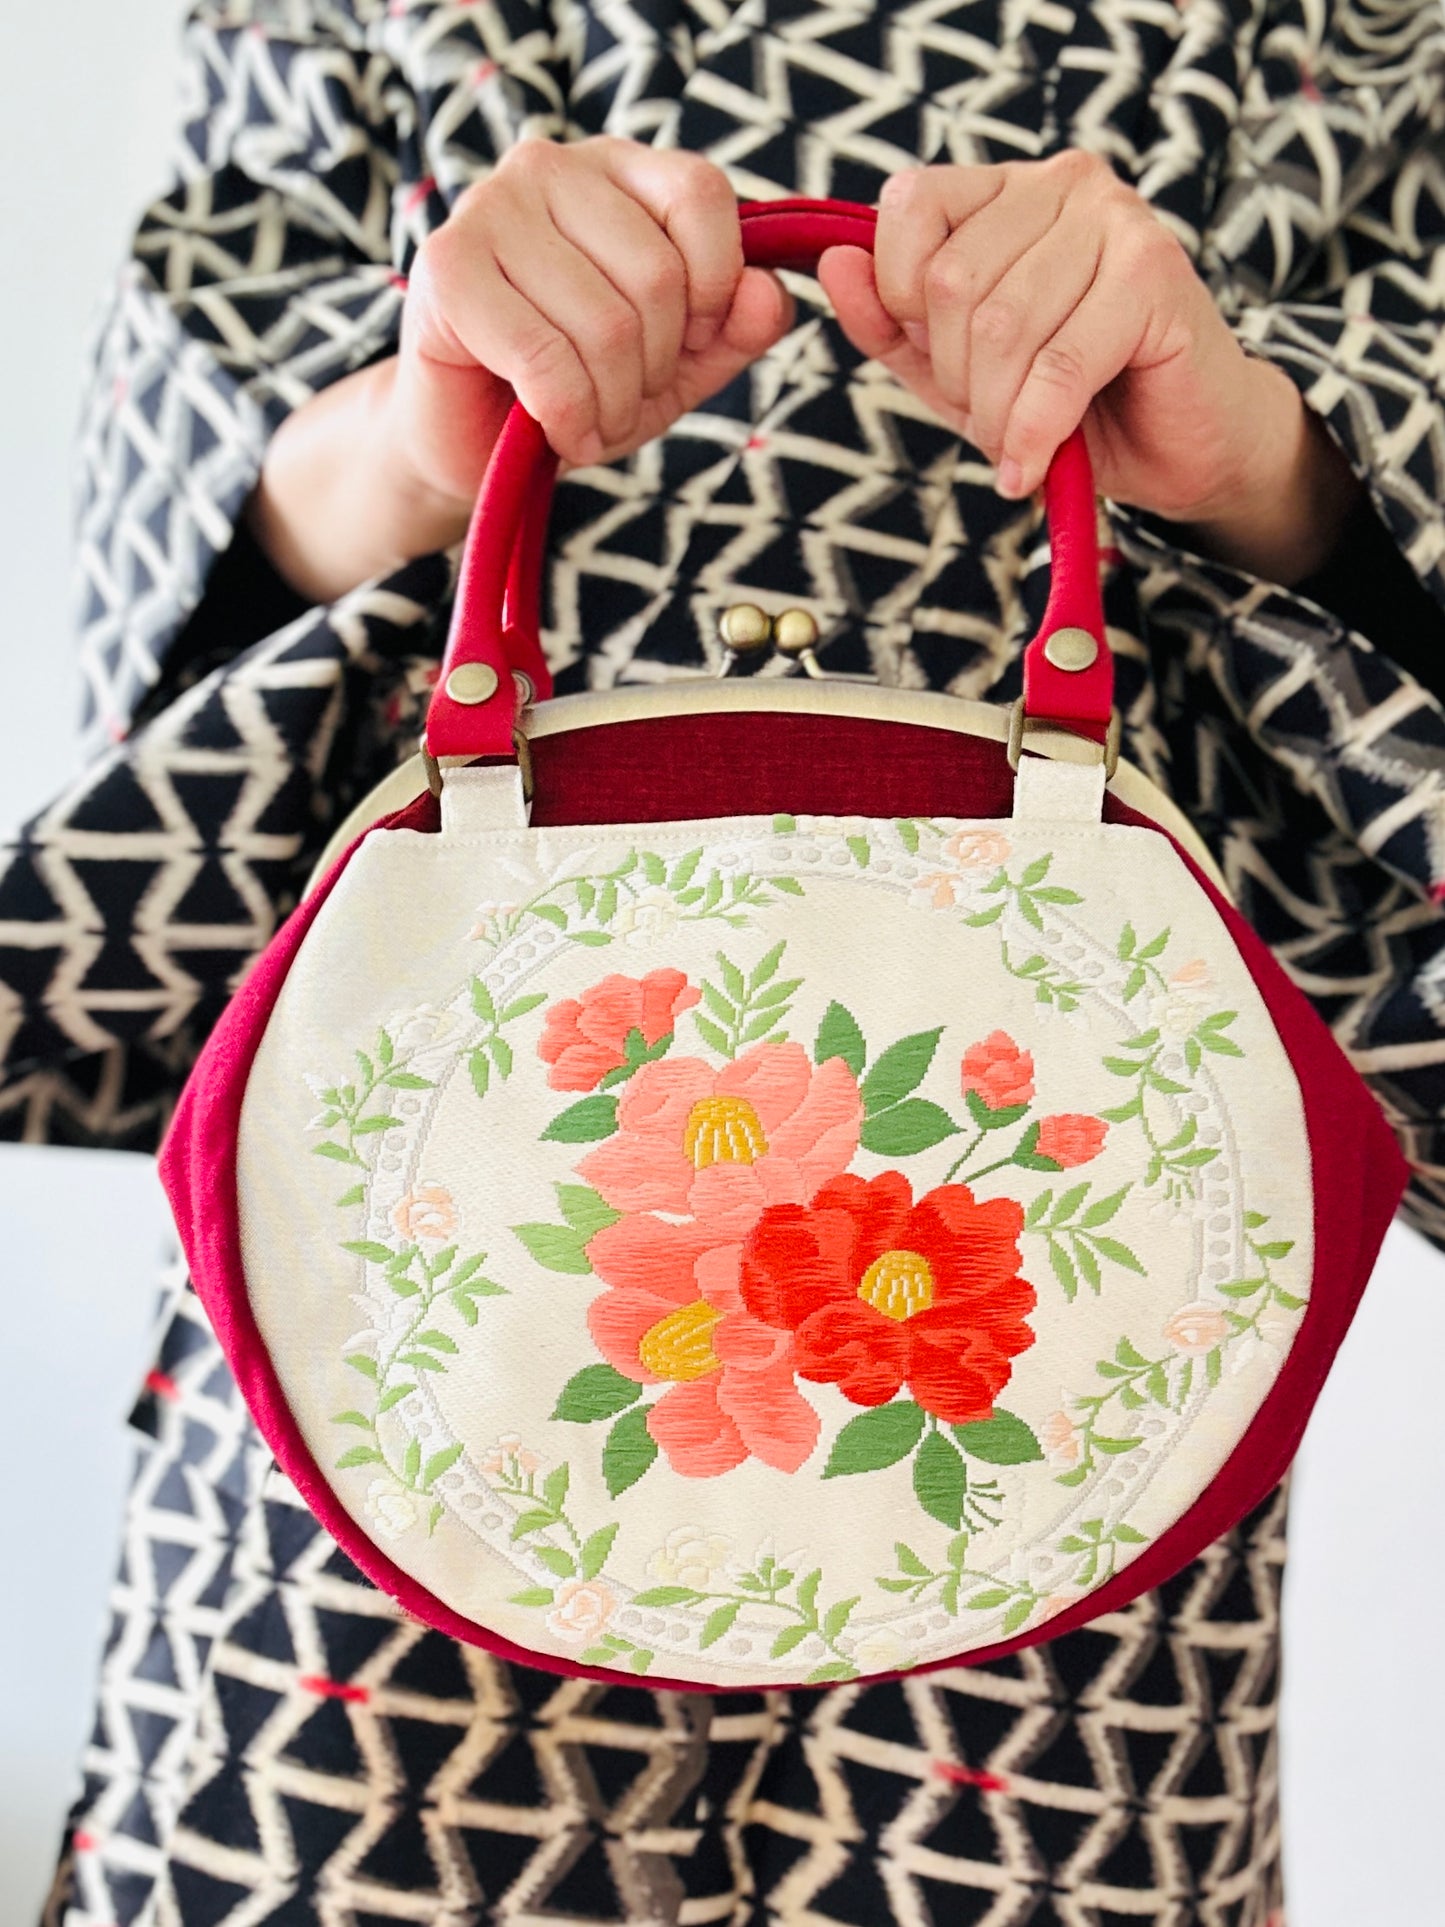 【Red/Camellia】Gamaguchi-en/Handbag,Clutch,Pouch,Japanese bag,Shoulder bag,Japanese Gifts